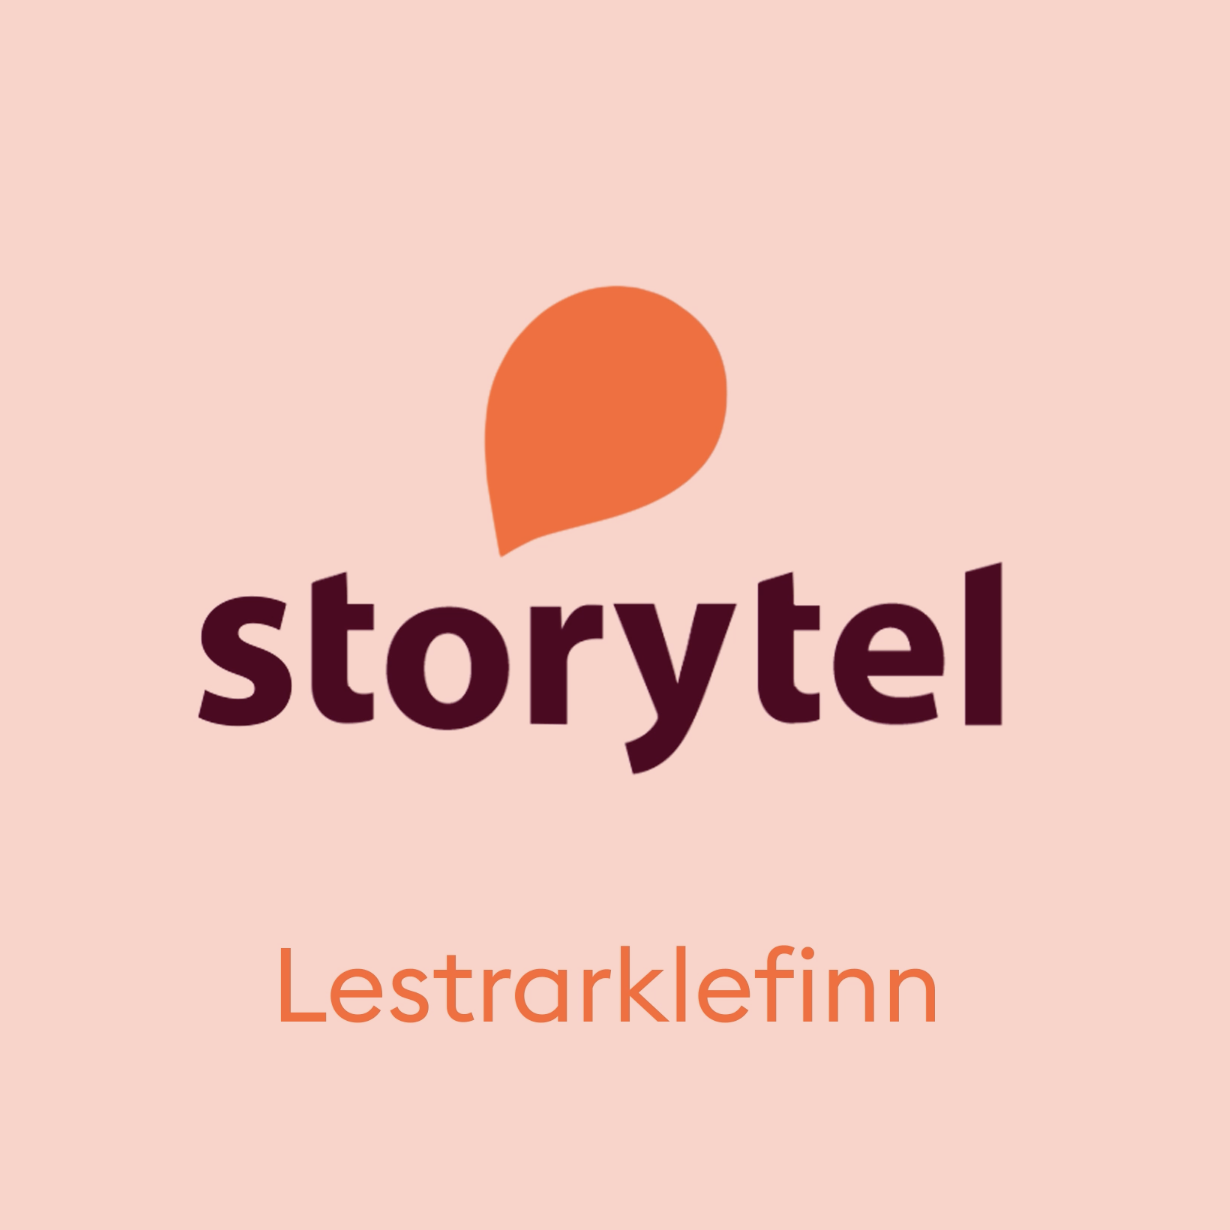 Bókmenntaþáttur Lestrarklefans á Storytel!